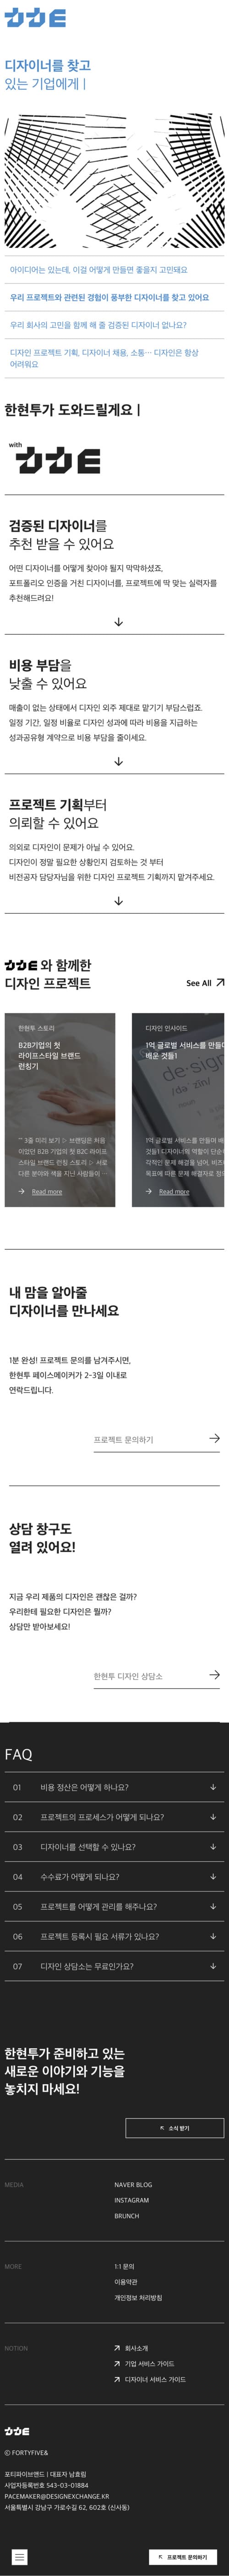 한국현물투자 반응형 웹 사이트 구현 및 유지보수 포트폴리오